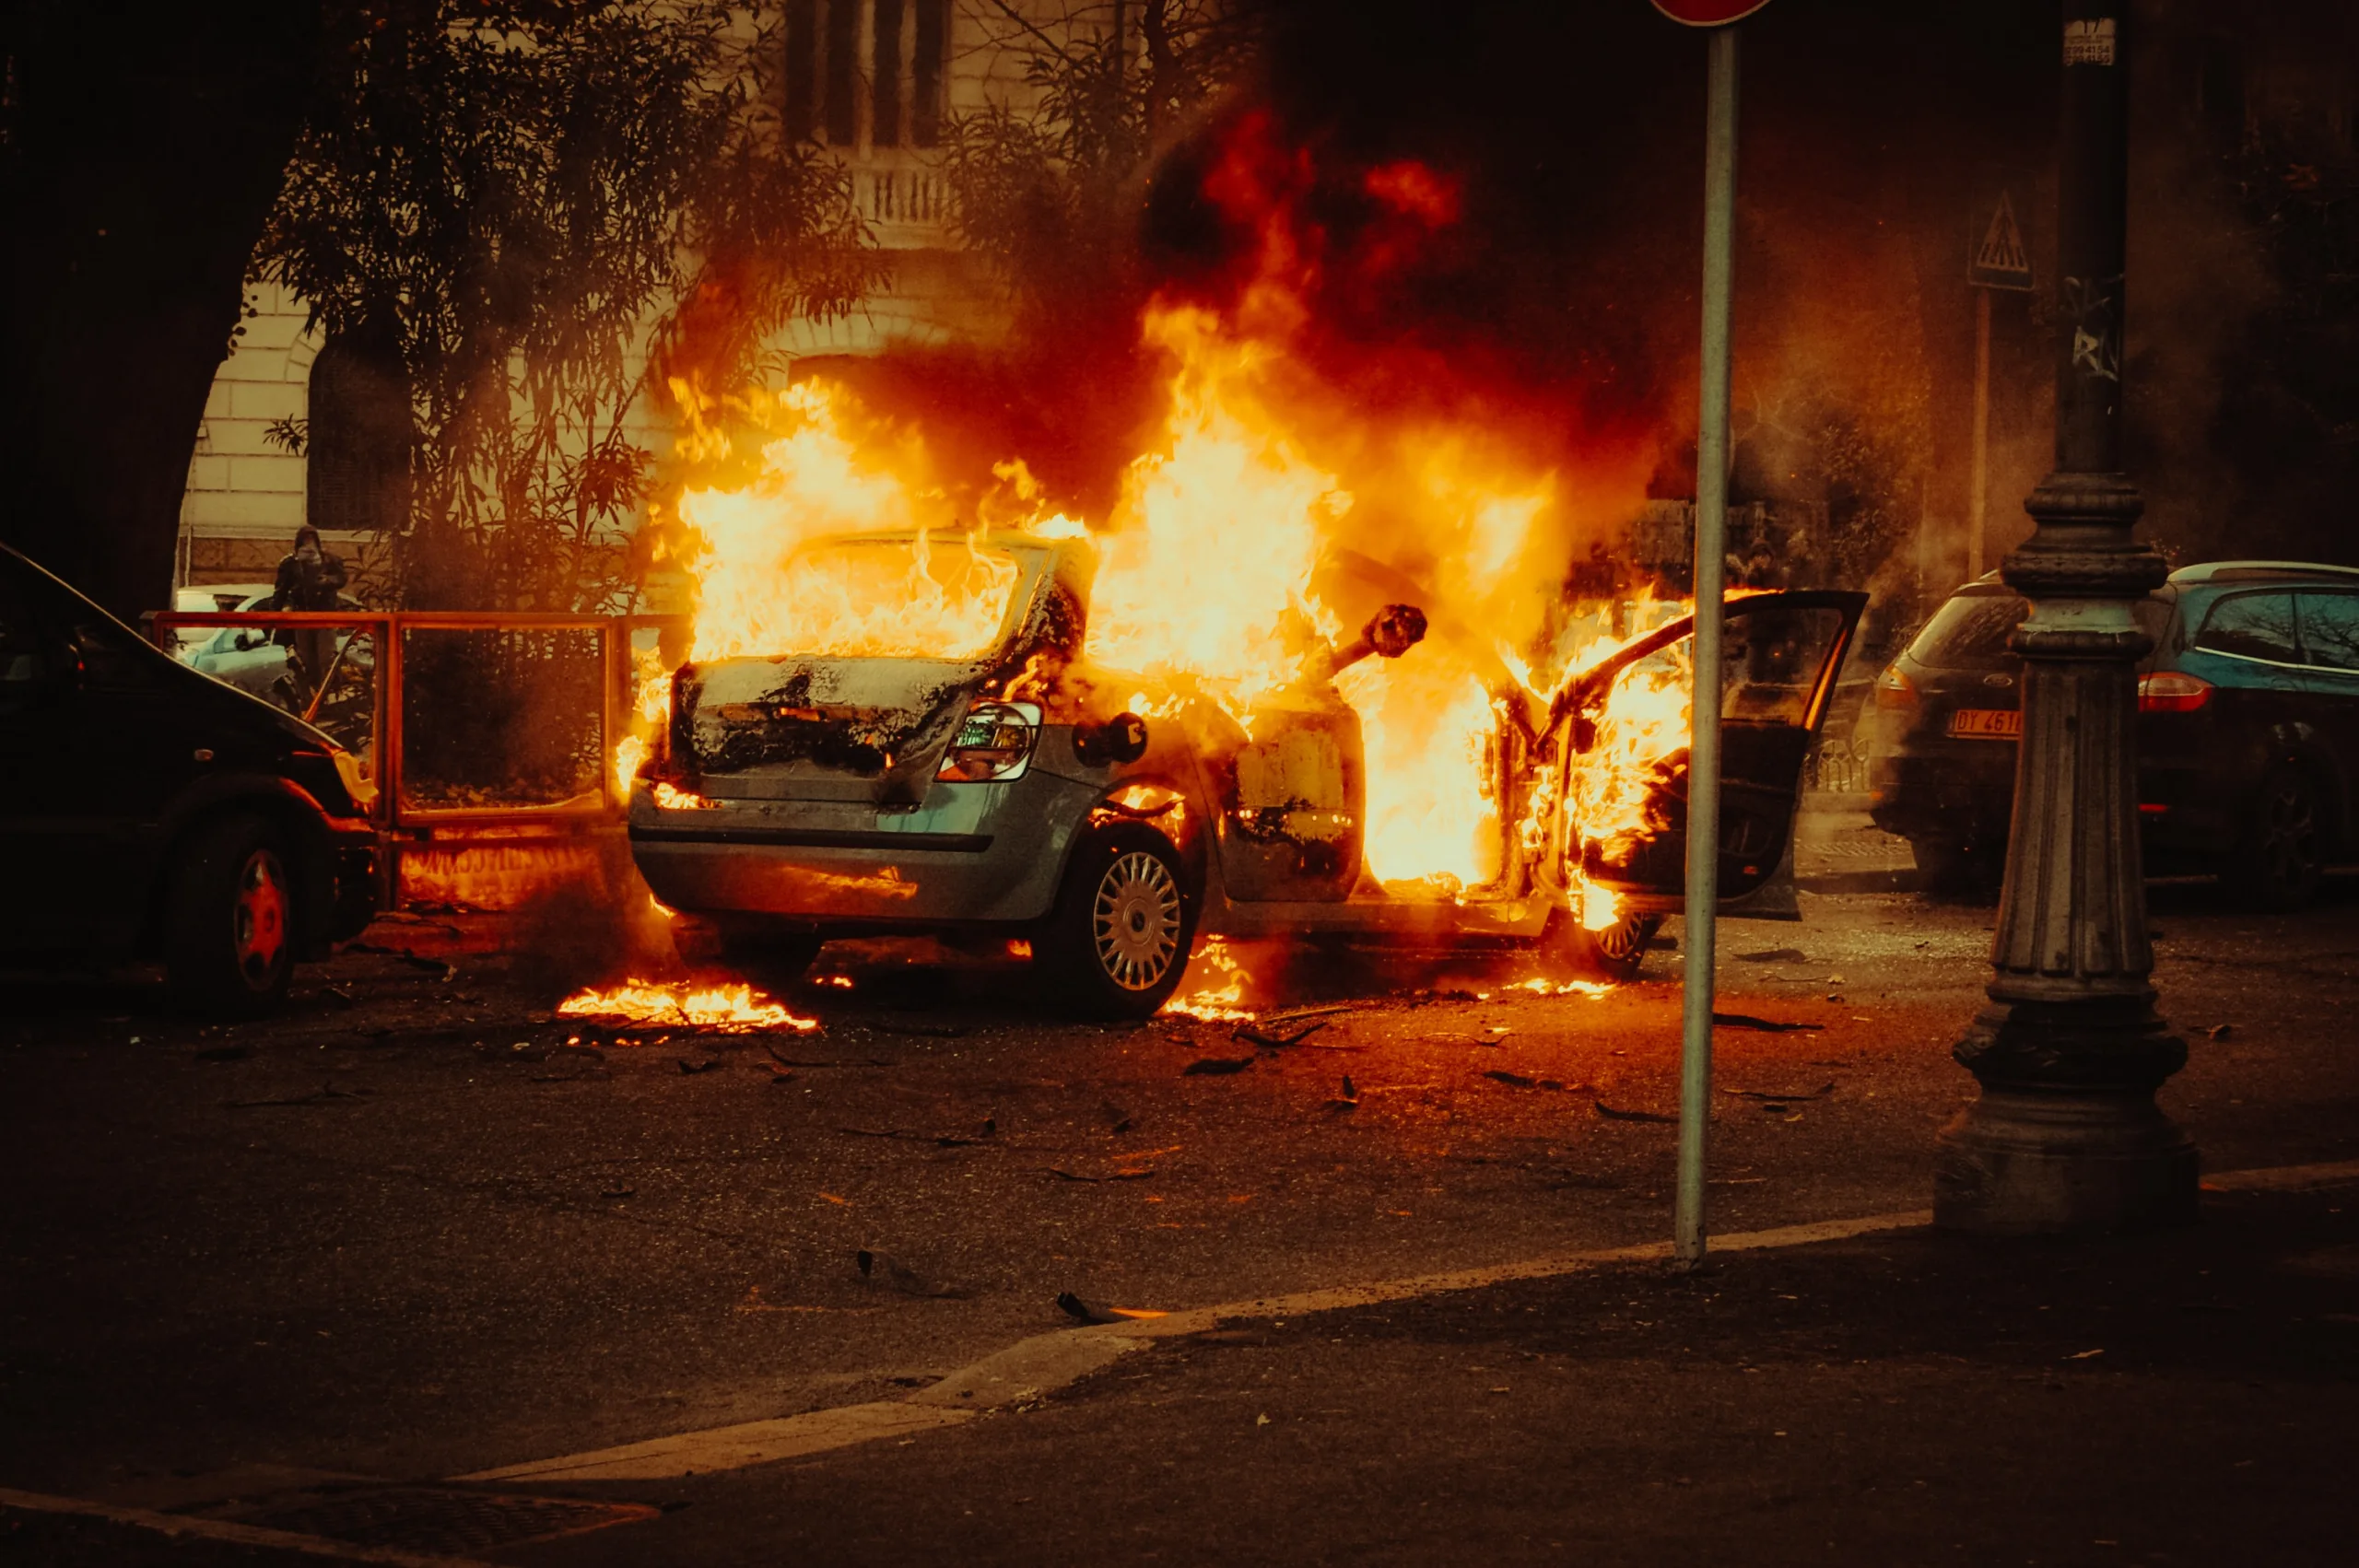 Image d'illustration d'une voiture brulé | @Flavio